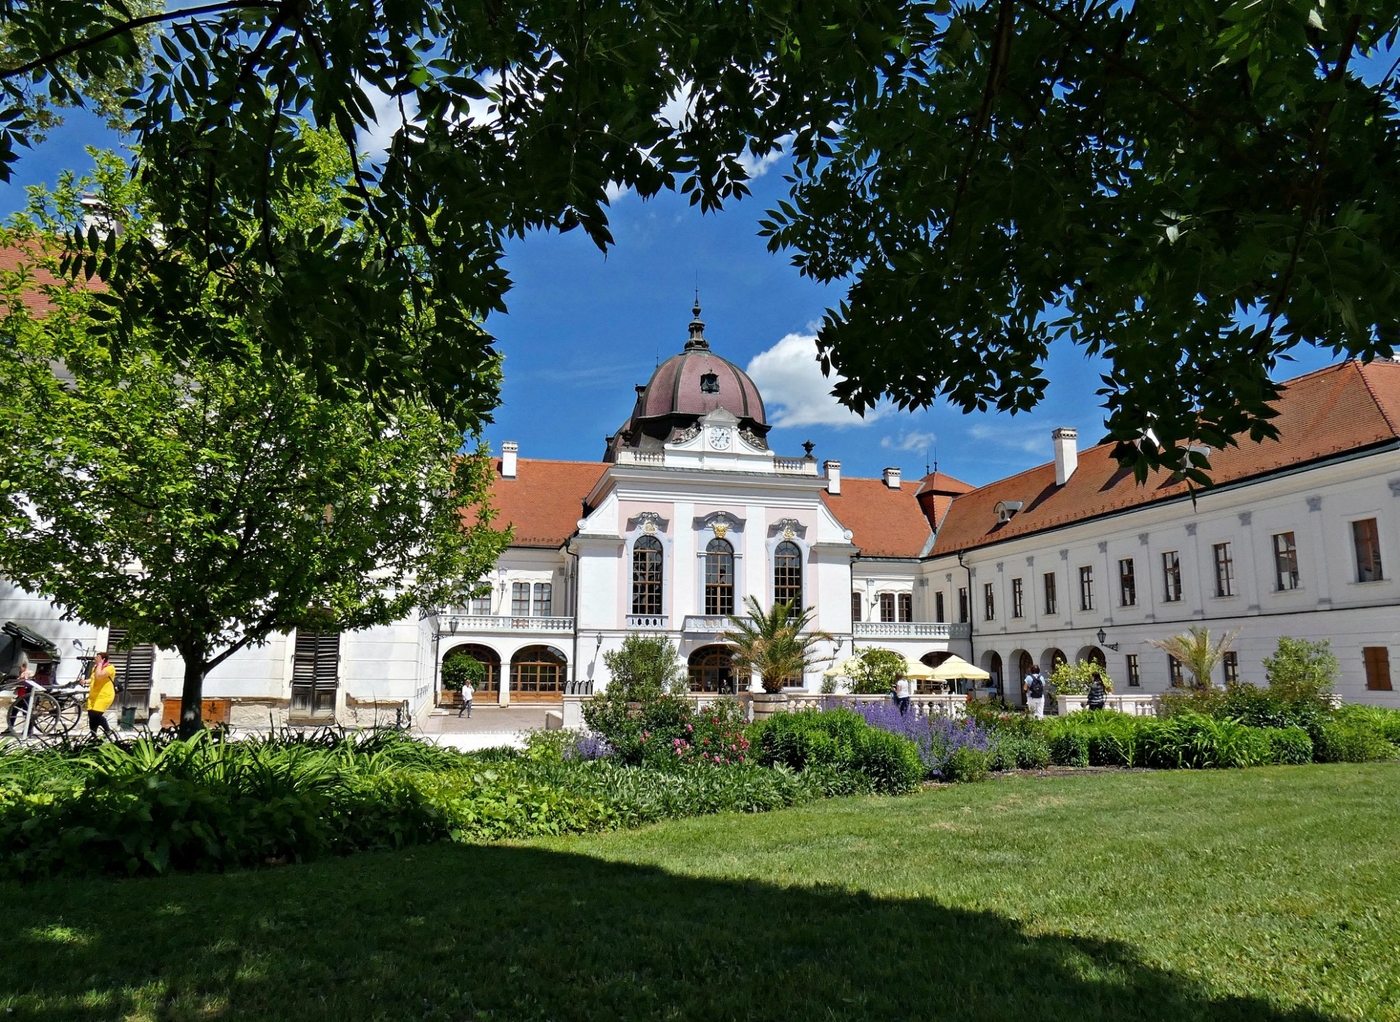 Gödöllői kastély – az egykori királyi nyaralóhely legnevezetesebb látványossága